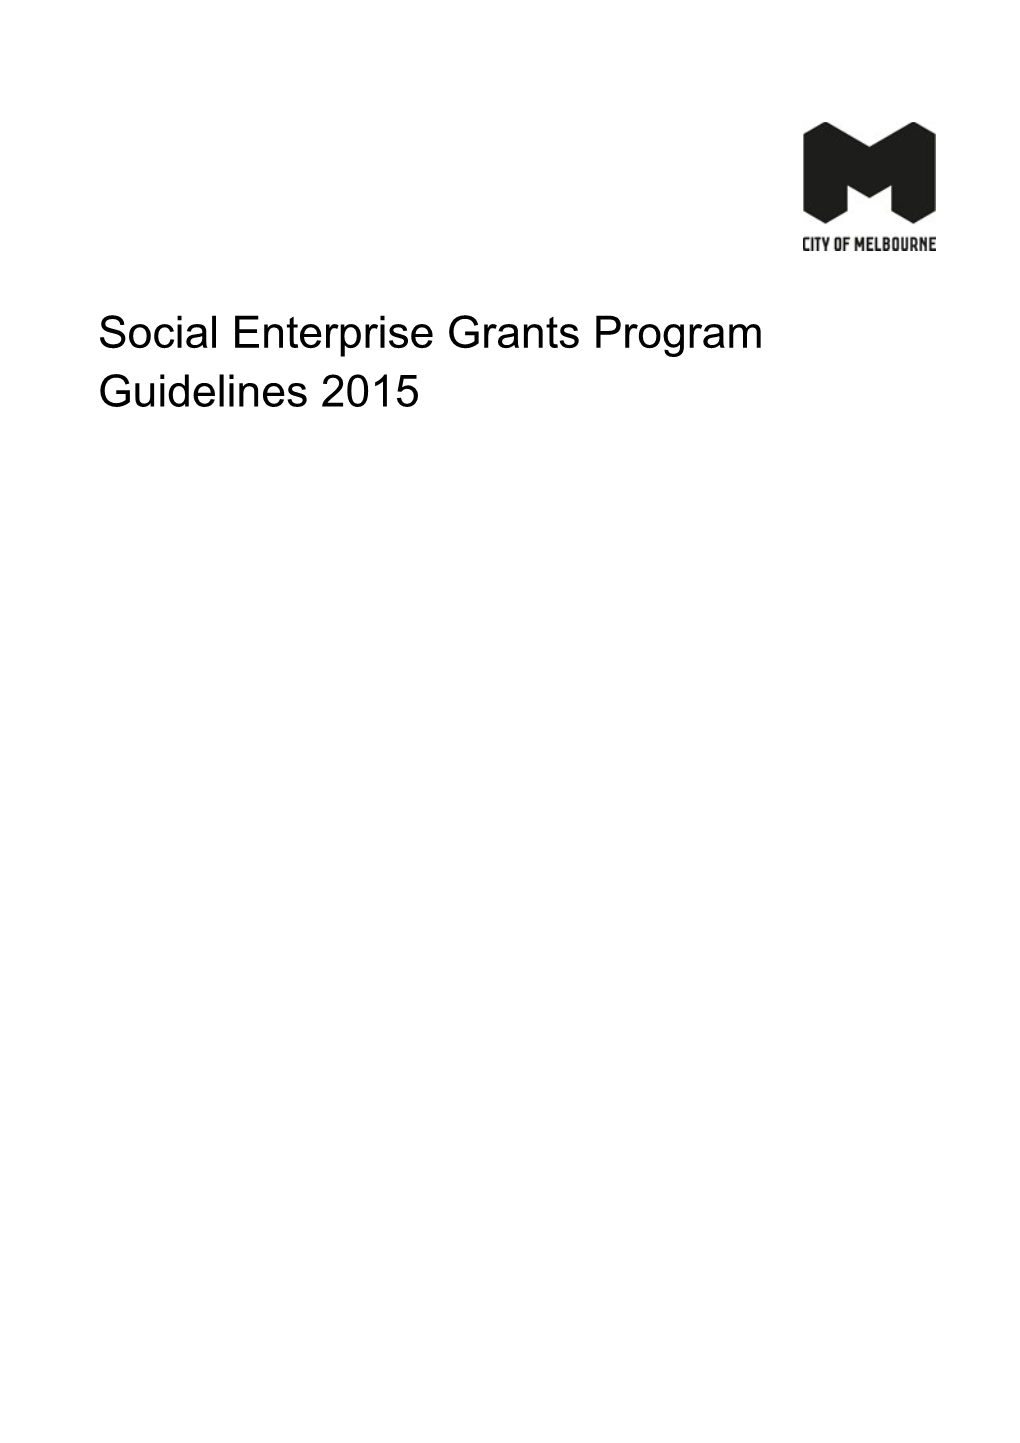 Social Enterprise Grants Program Guidelines 2015